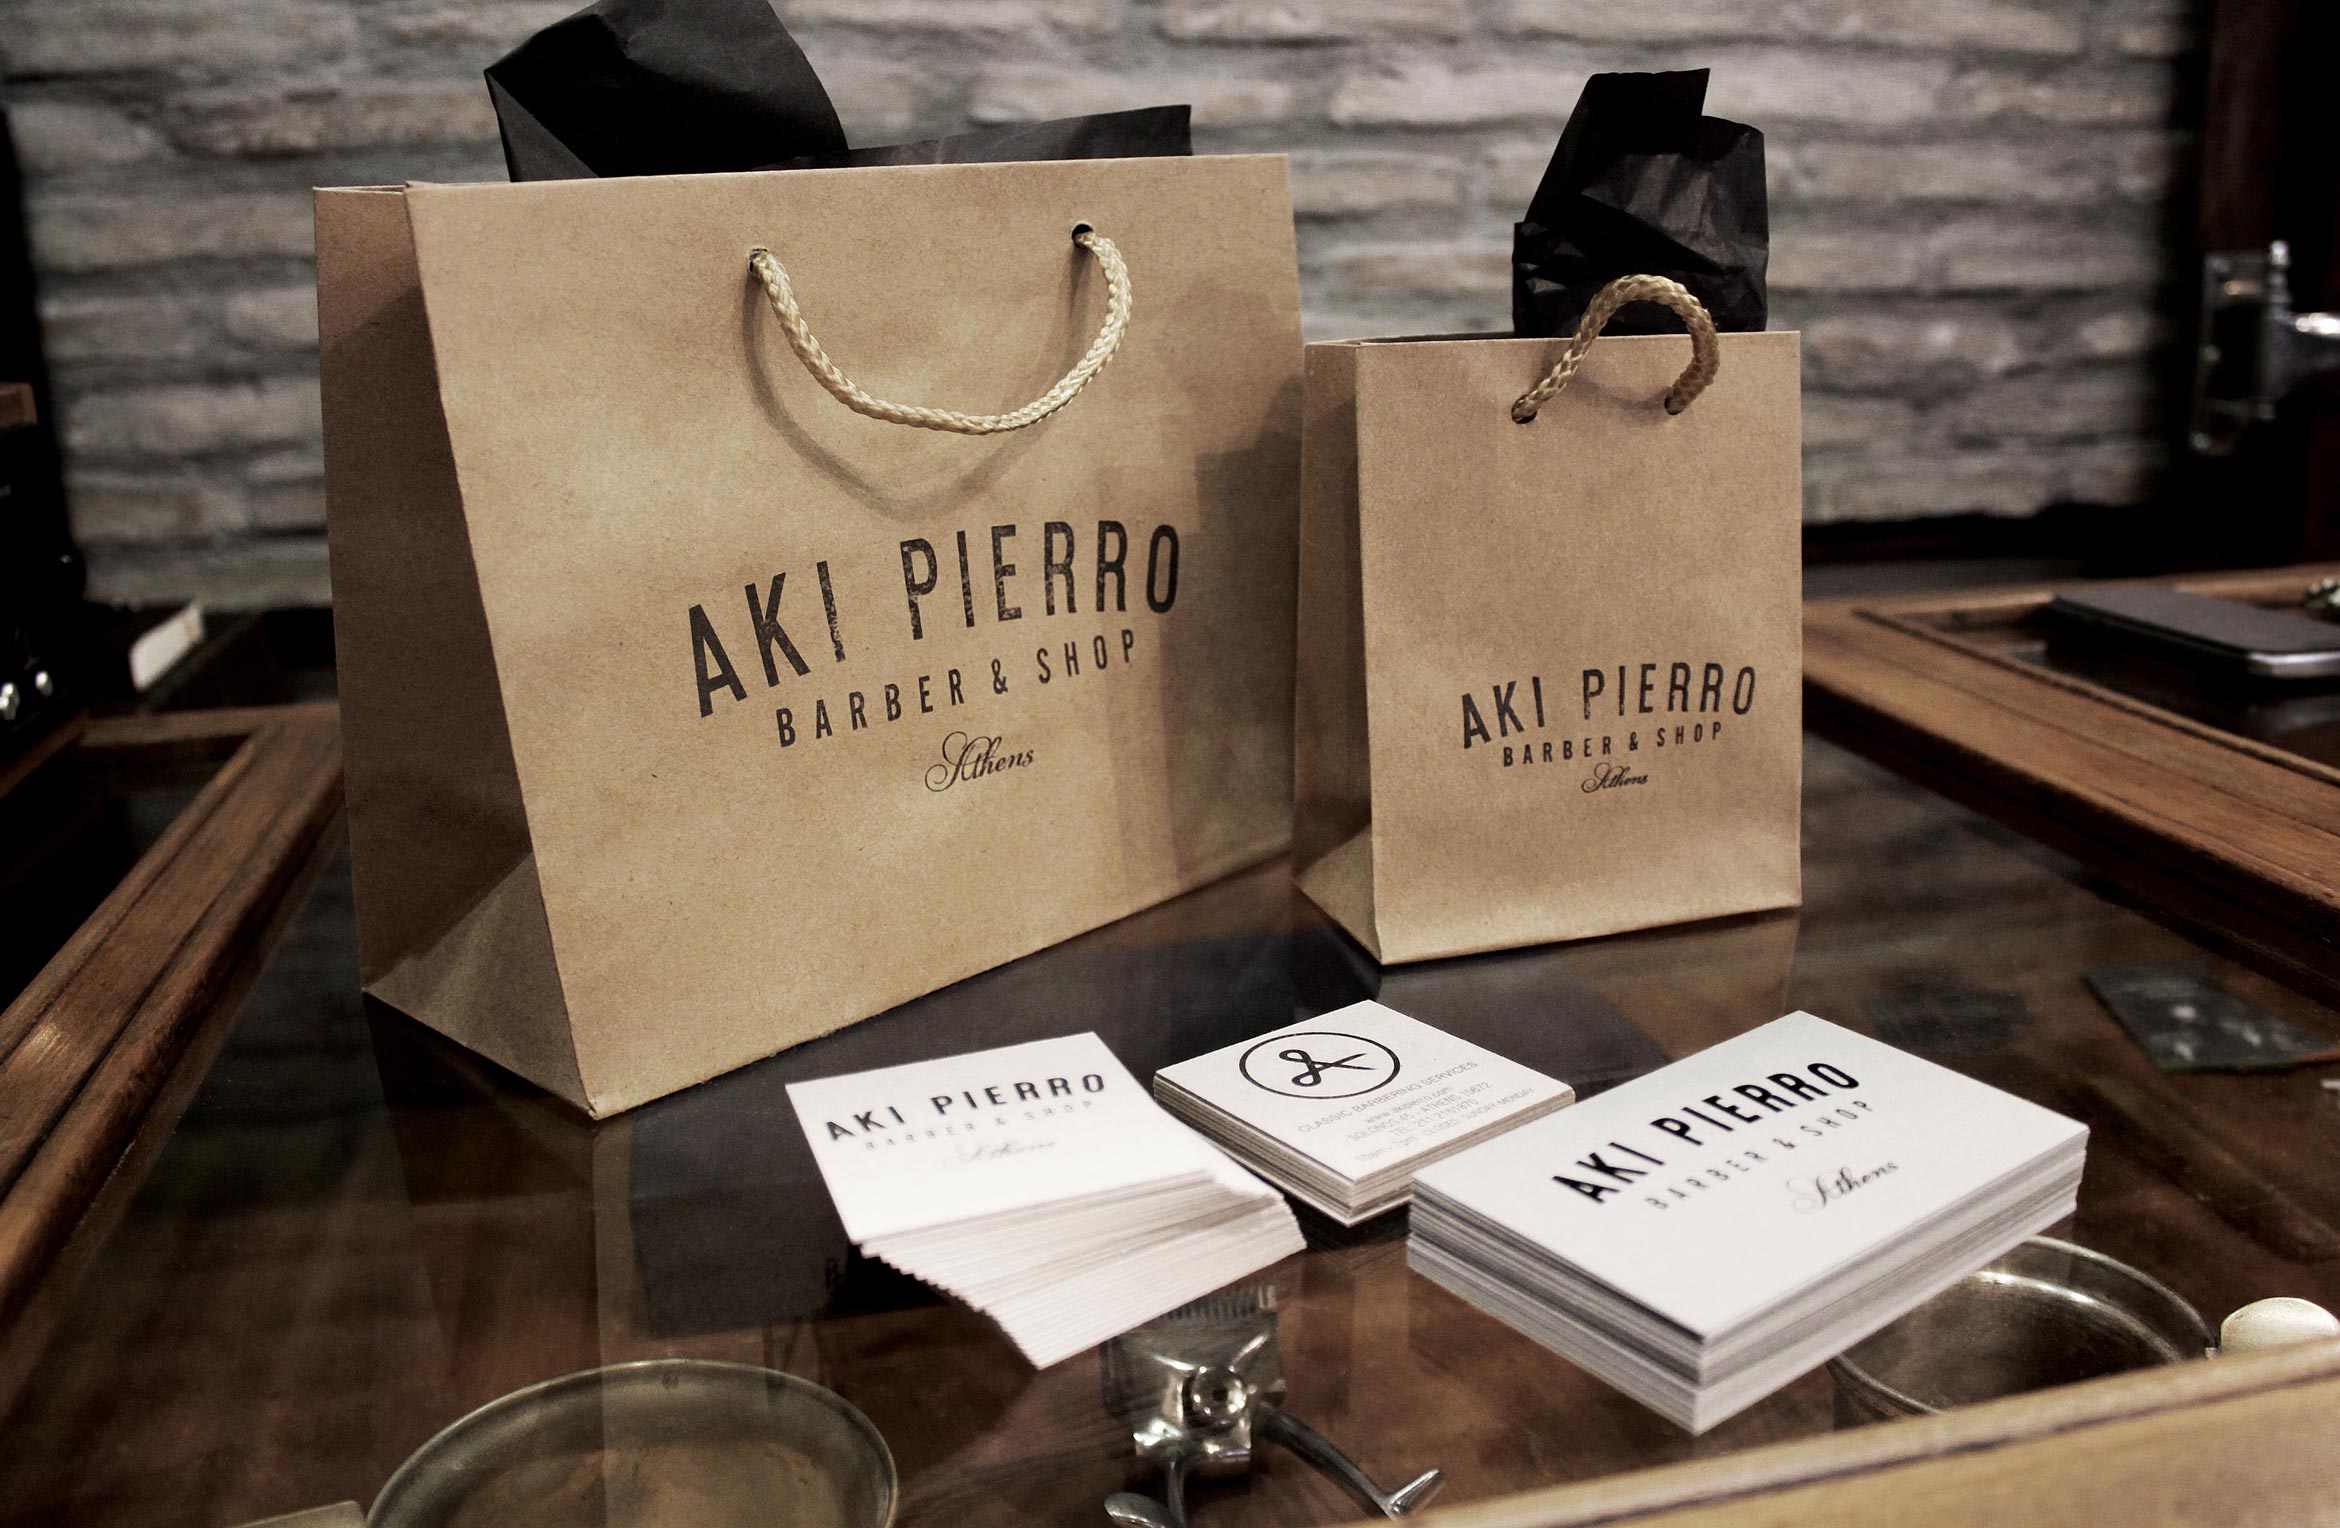 Aki Pierro paper bags